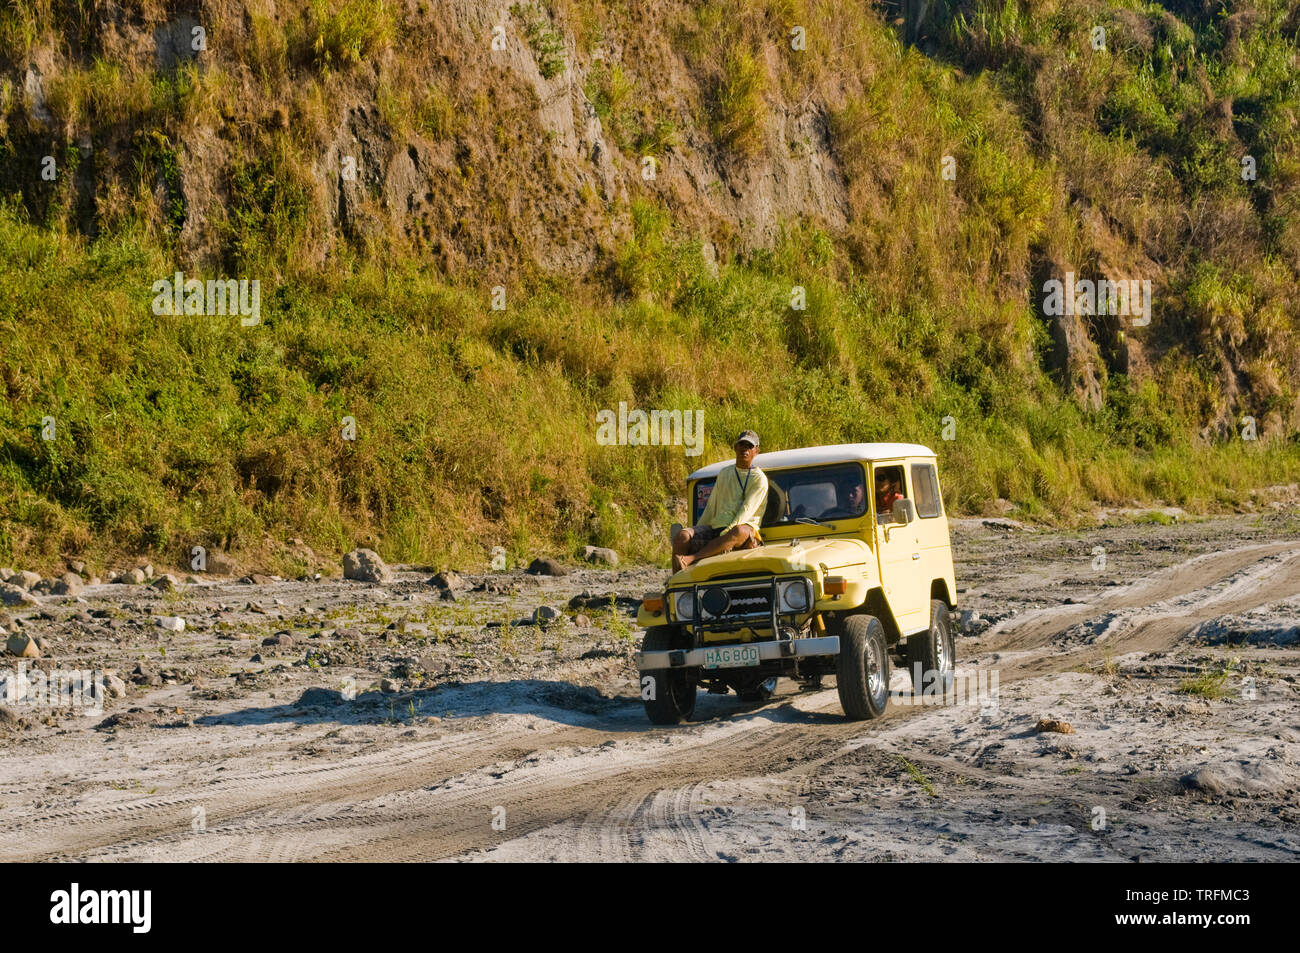 Andando a fino al Lago di Pinatubo richiede una lunga camminata attraverso terreni accidentati. 4 ruote veicoli fuoristrada possono abbreviare la passeggiata con una marcia irregolare. Foto Stock